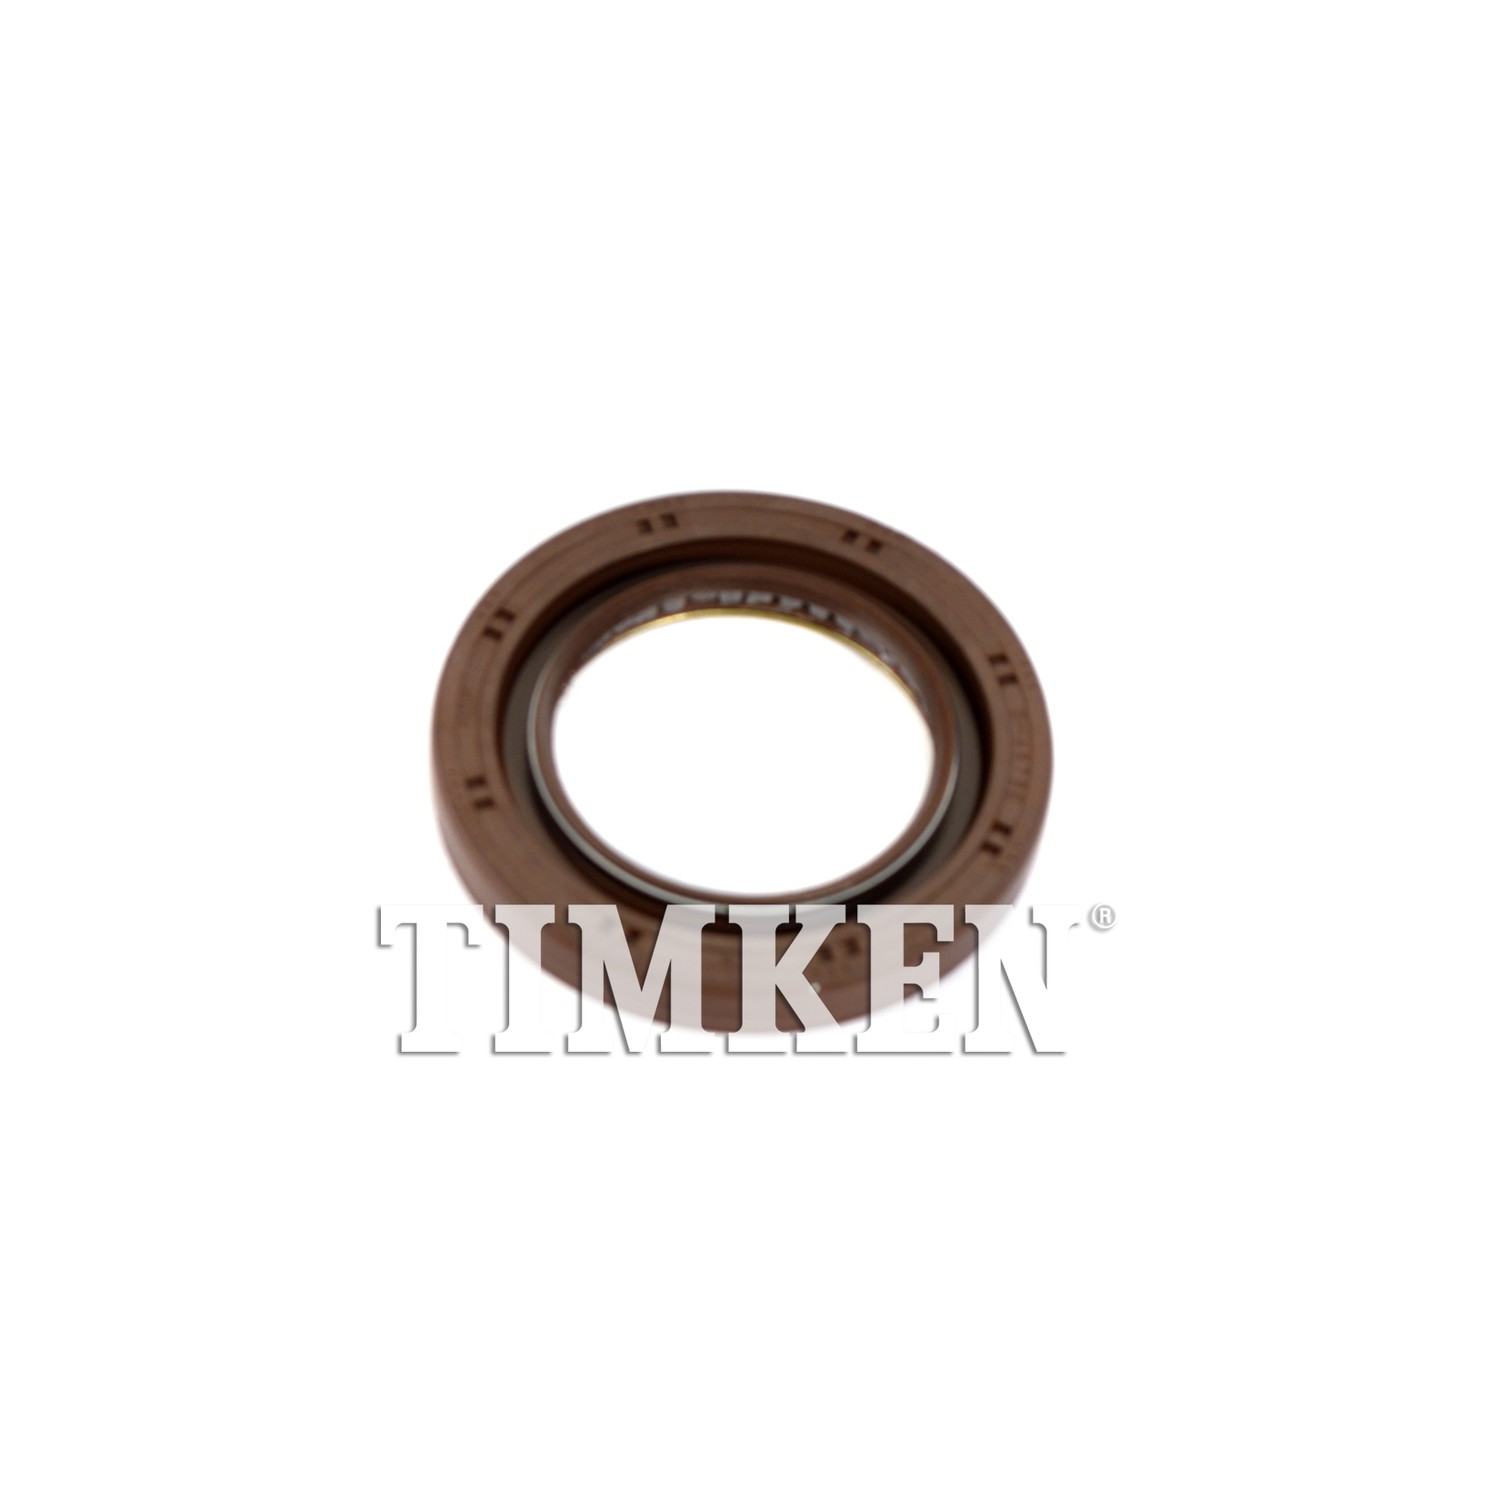 TIMKEN - Auto Trans Manual Shaft Seal - TIM 710582